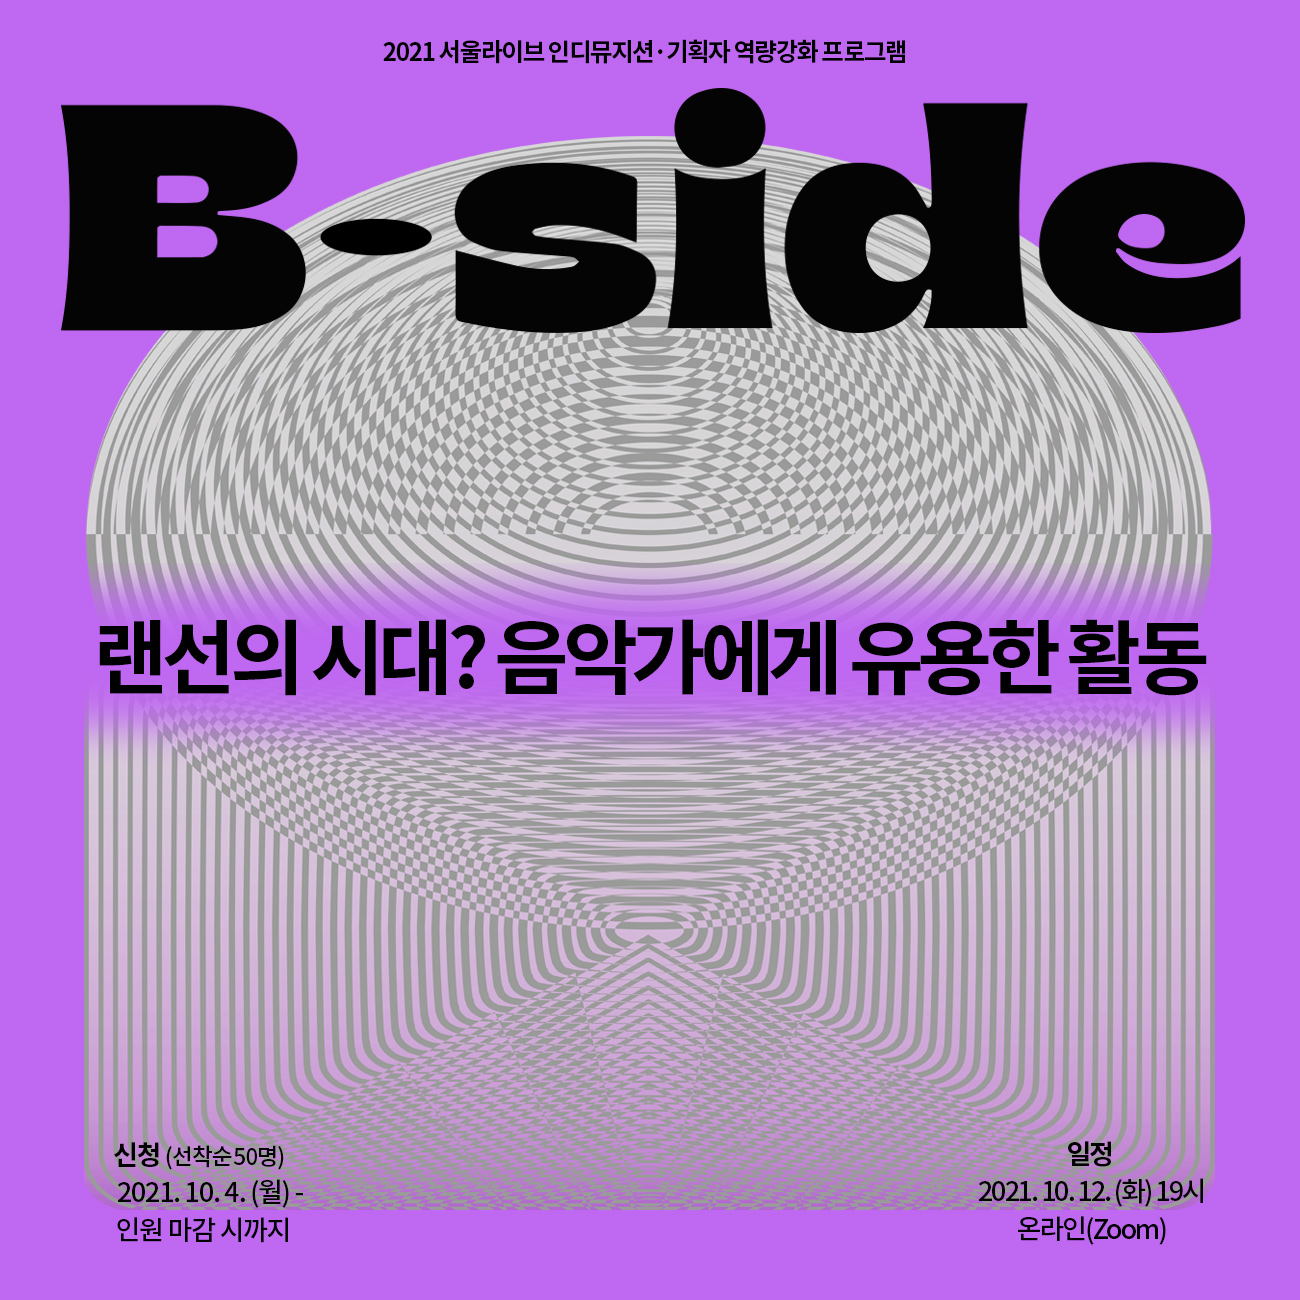 서울라이브 B-Side 실무강의(2) : 랜선의 시대? 음악가에게 유용한 활동 참여 신청 안내